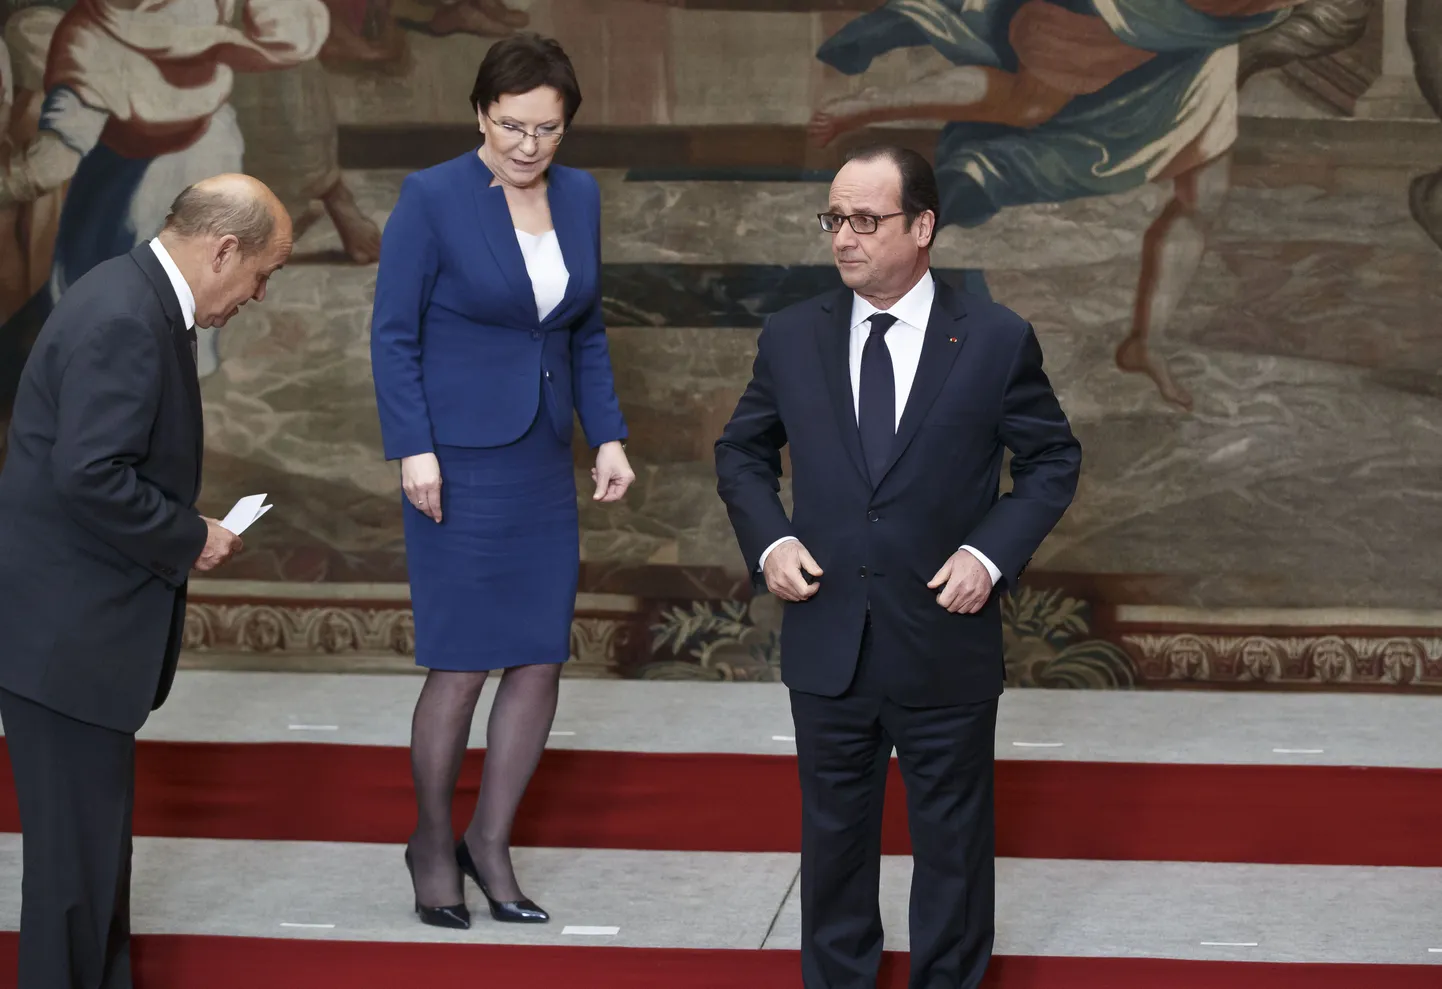 Prantsuse kaitseminister Jean-Yves Le Drian (vasakul) otsib koos Poola peaministri Ewa Kopacziga kohta, kuhu seista Élysée palees enne grupipildi tegemist. Prantsusmaa president François Hollande on oma koha juba sisse võtnud.